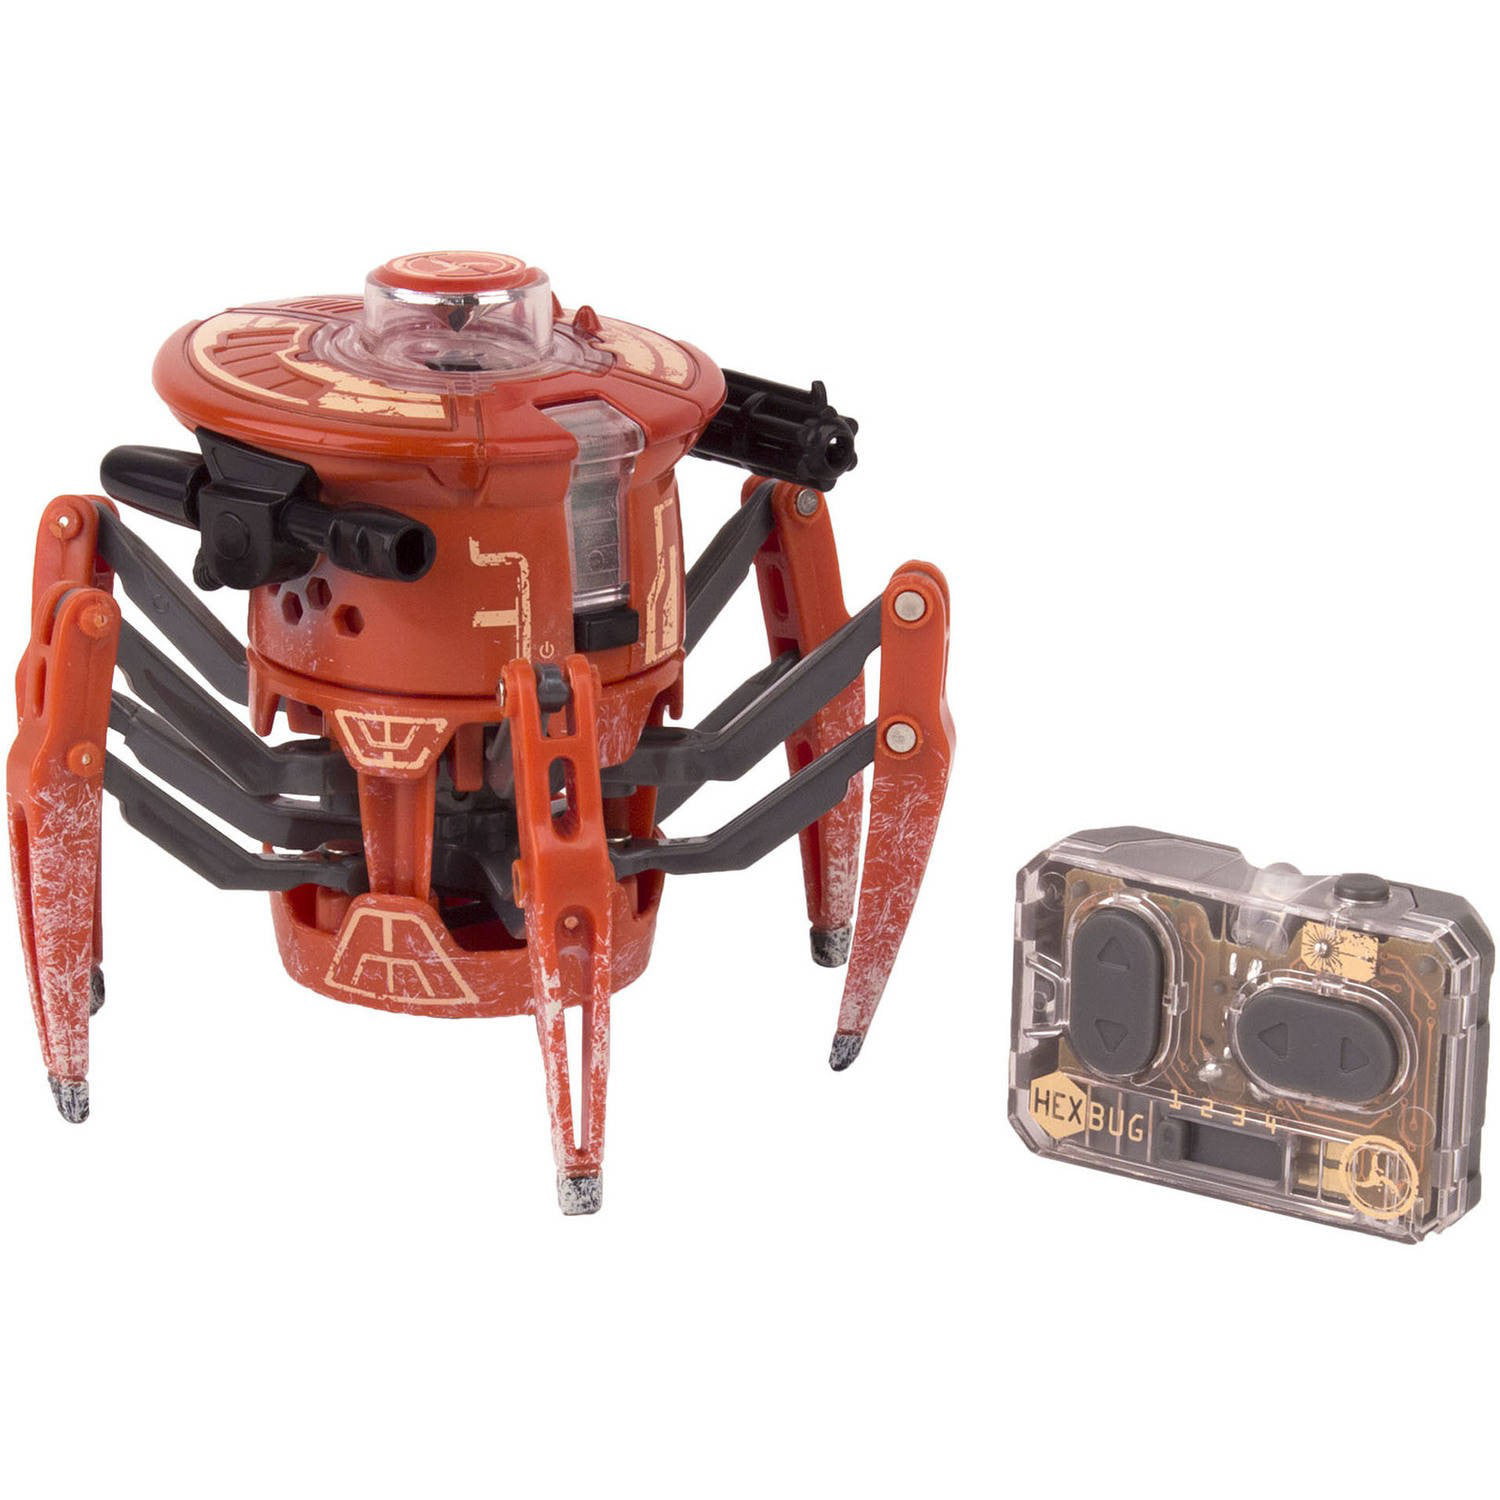 for sale online HEXBUG Battle Spider 2 PK Toy 